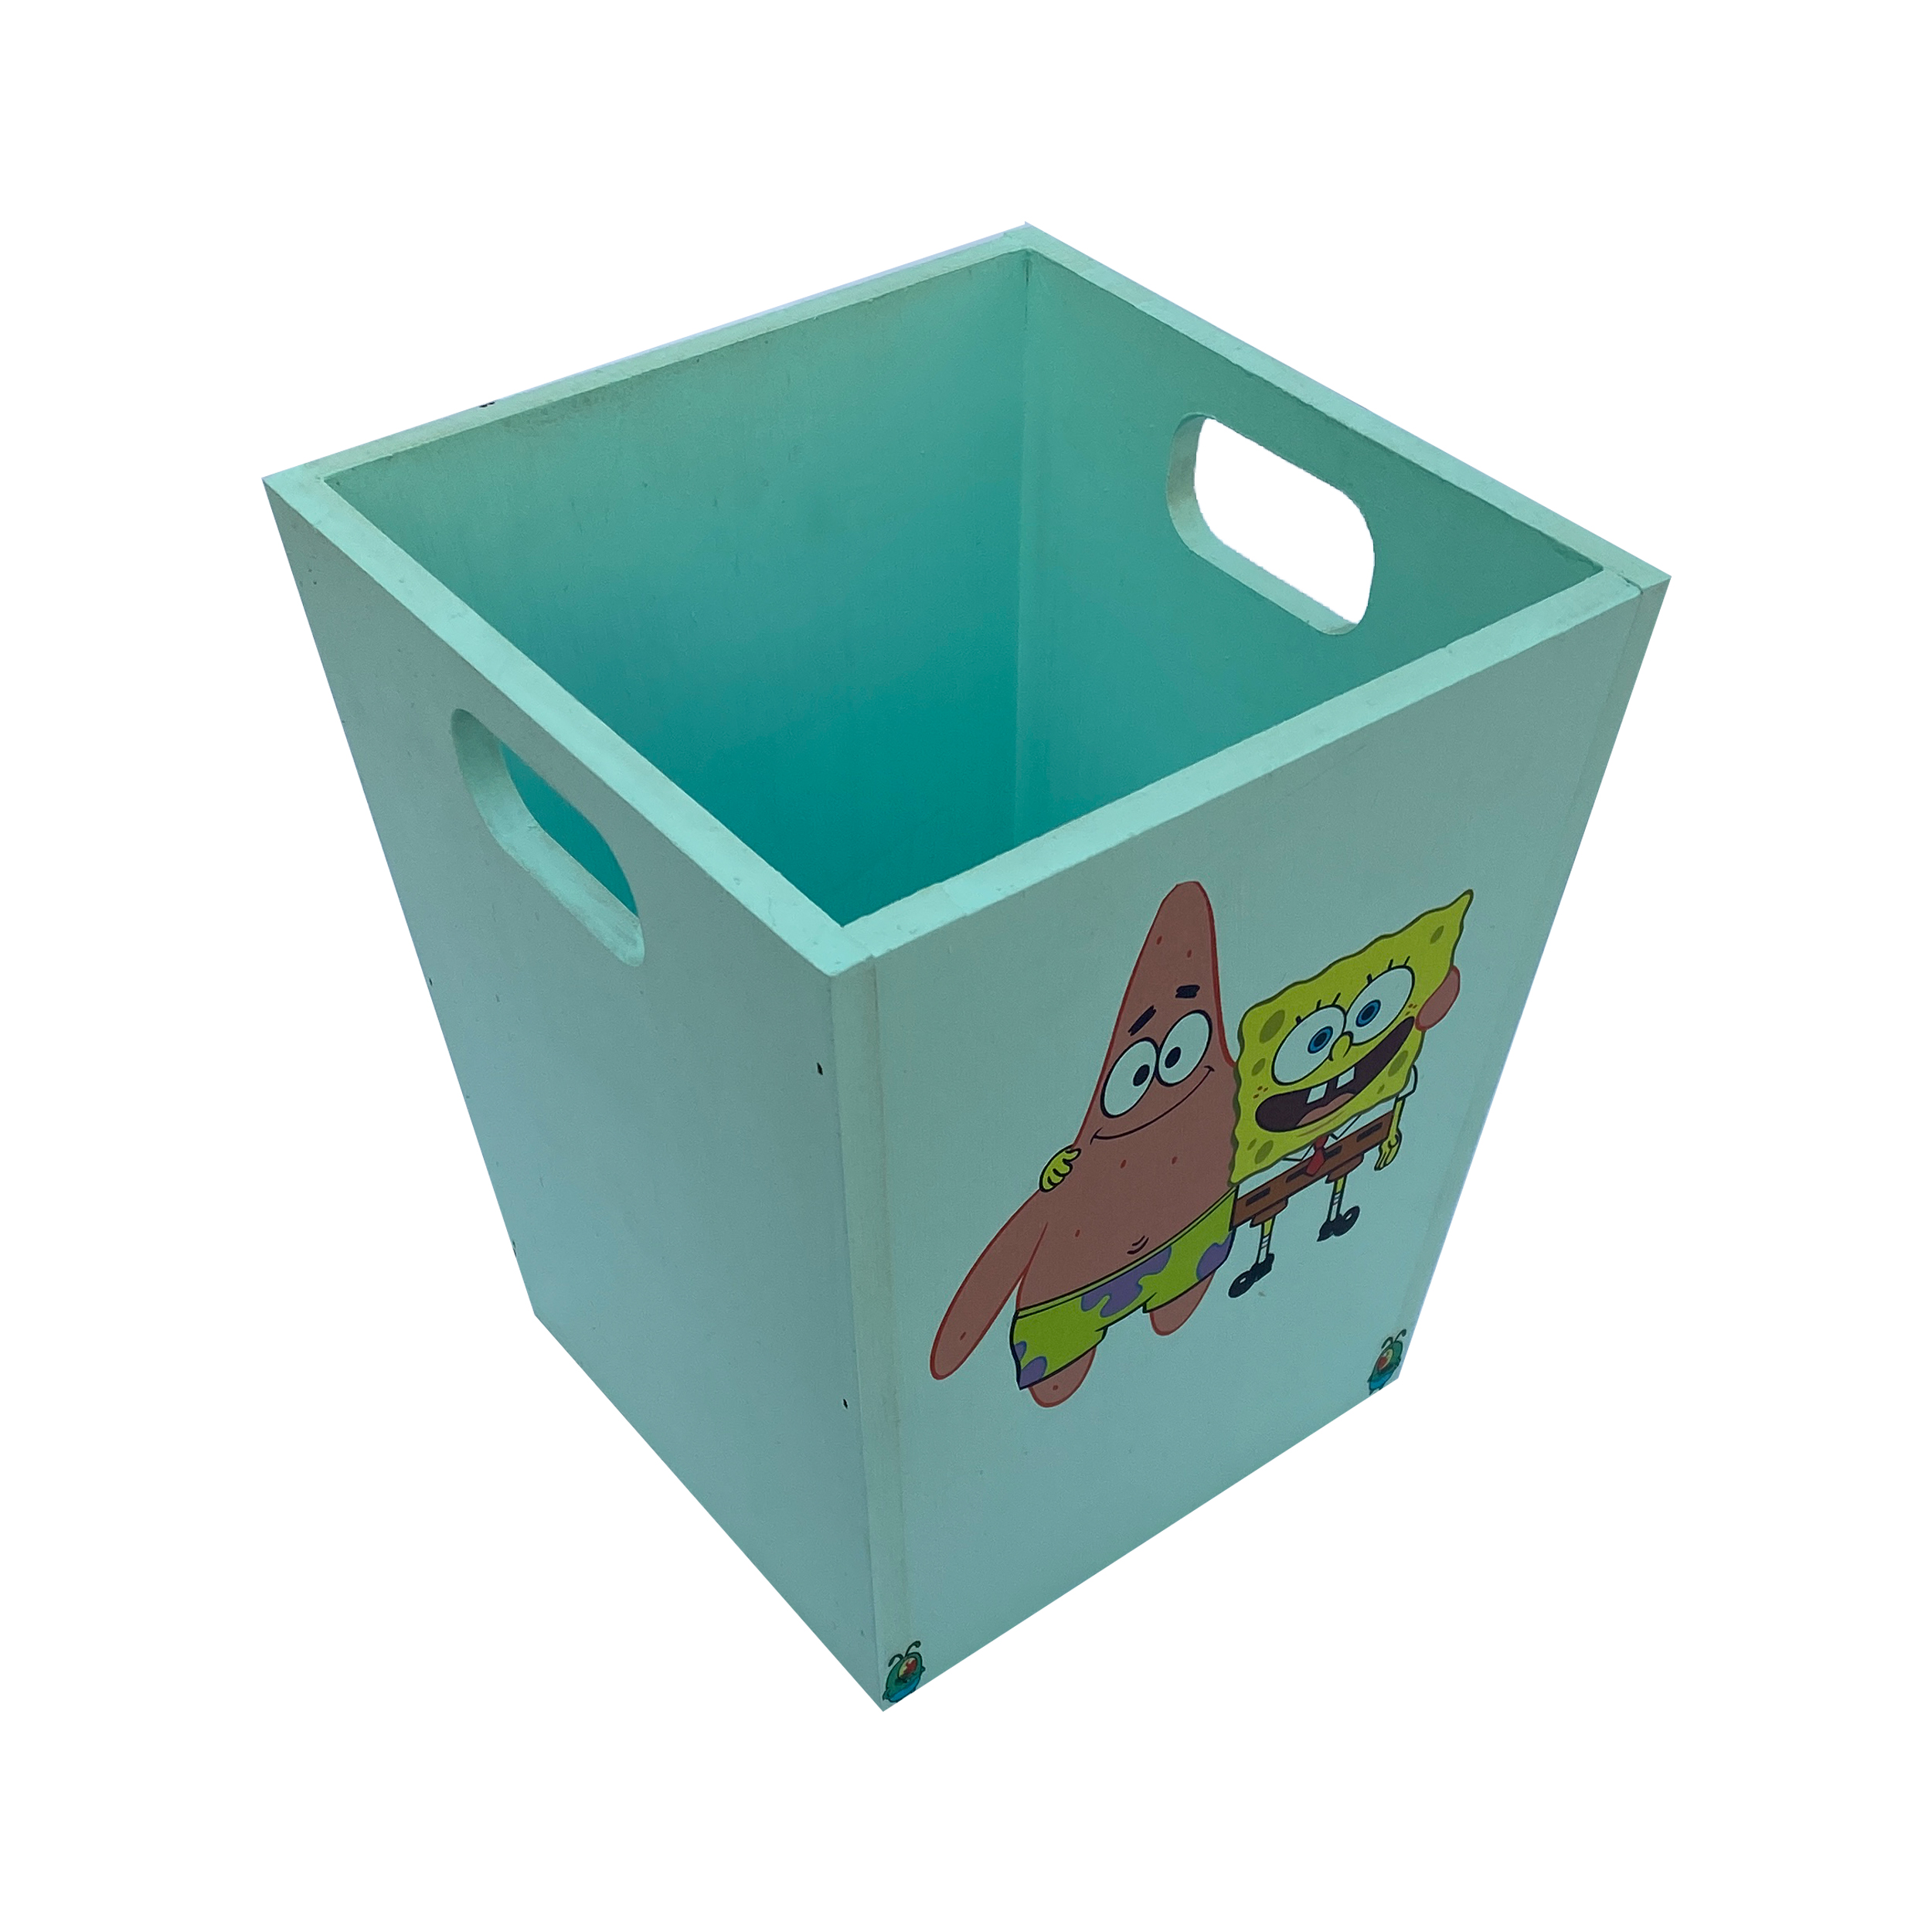 سطل زباله اتاق کودک مدل باب اسفنجی